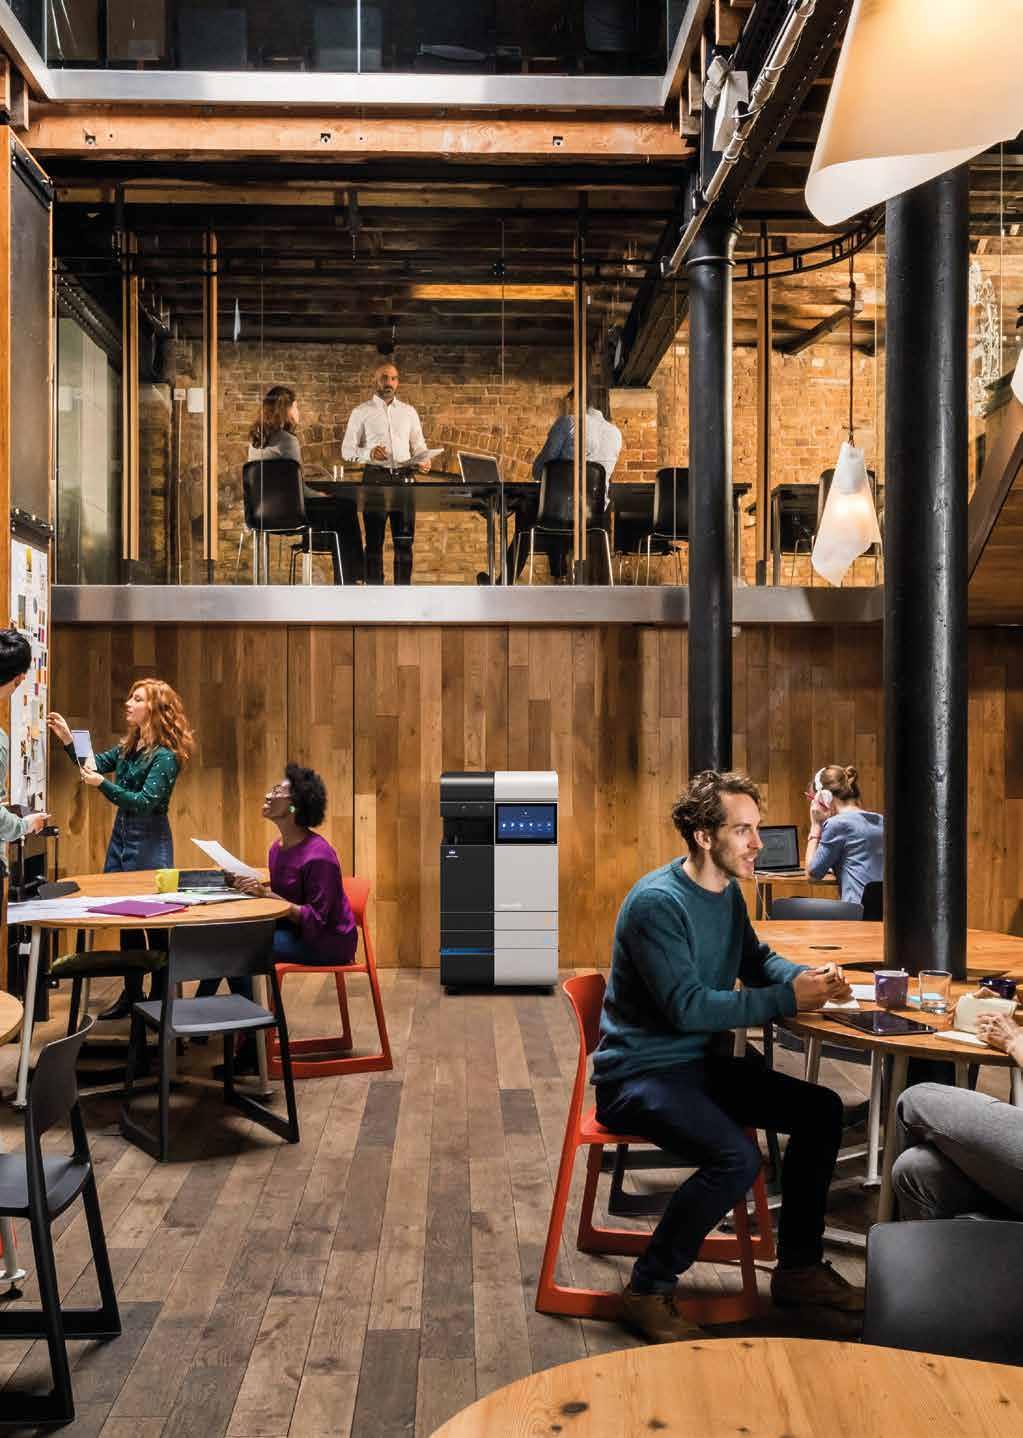 TECHNOLOGIE, DIE MIT IHNEN WÄCHST Die Arbeitswelt ist im Wandel. IT soll sich nach Menschen und Unternehmen richten. Workplace Hub definiert Arbeit neu.